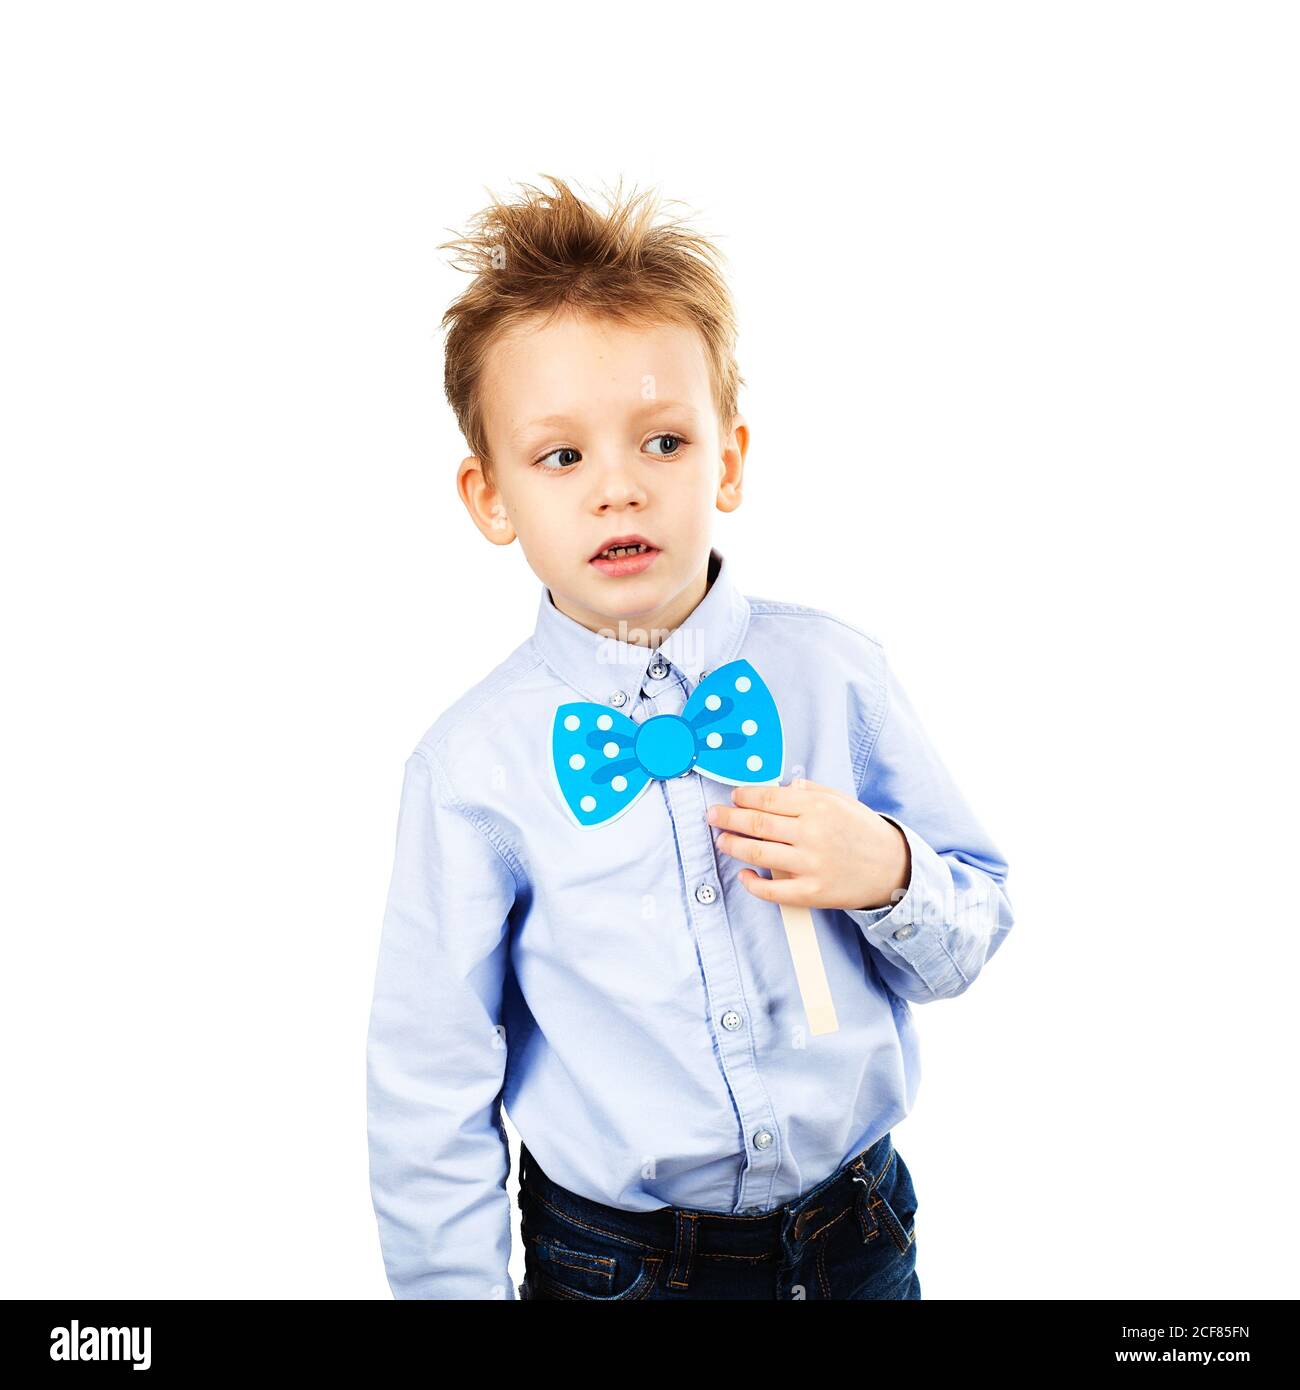 Joli petit garçon d'école avec noeud papillon en papier bleu isolé sur un  fond blanc. Joyeux enfant souriant avec des accessoires photo amusants.  Concept de mode pour enfants Photo Stock - Alamy